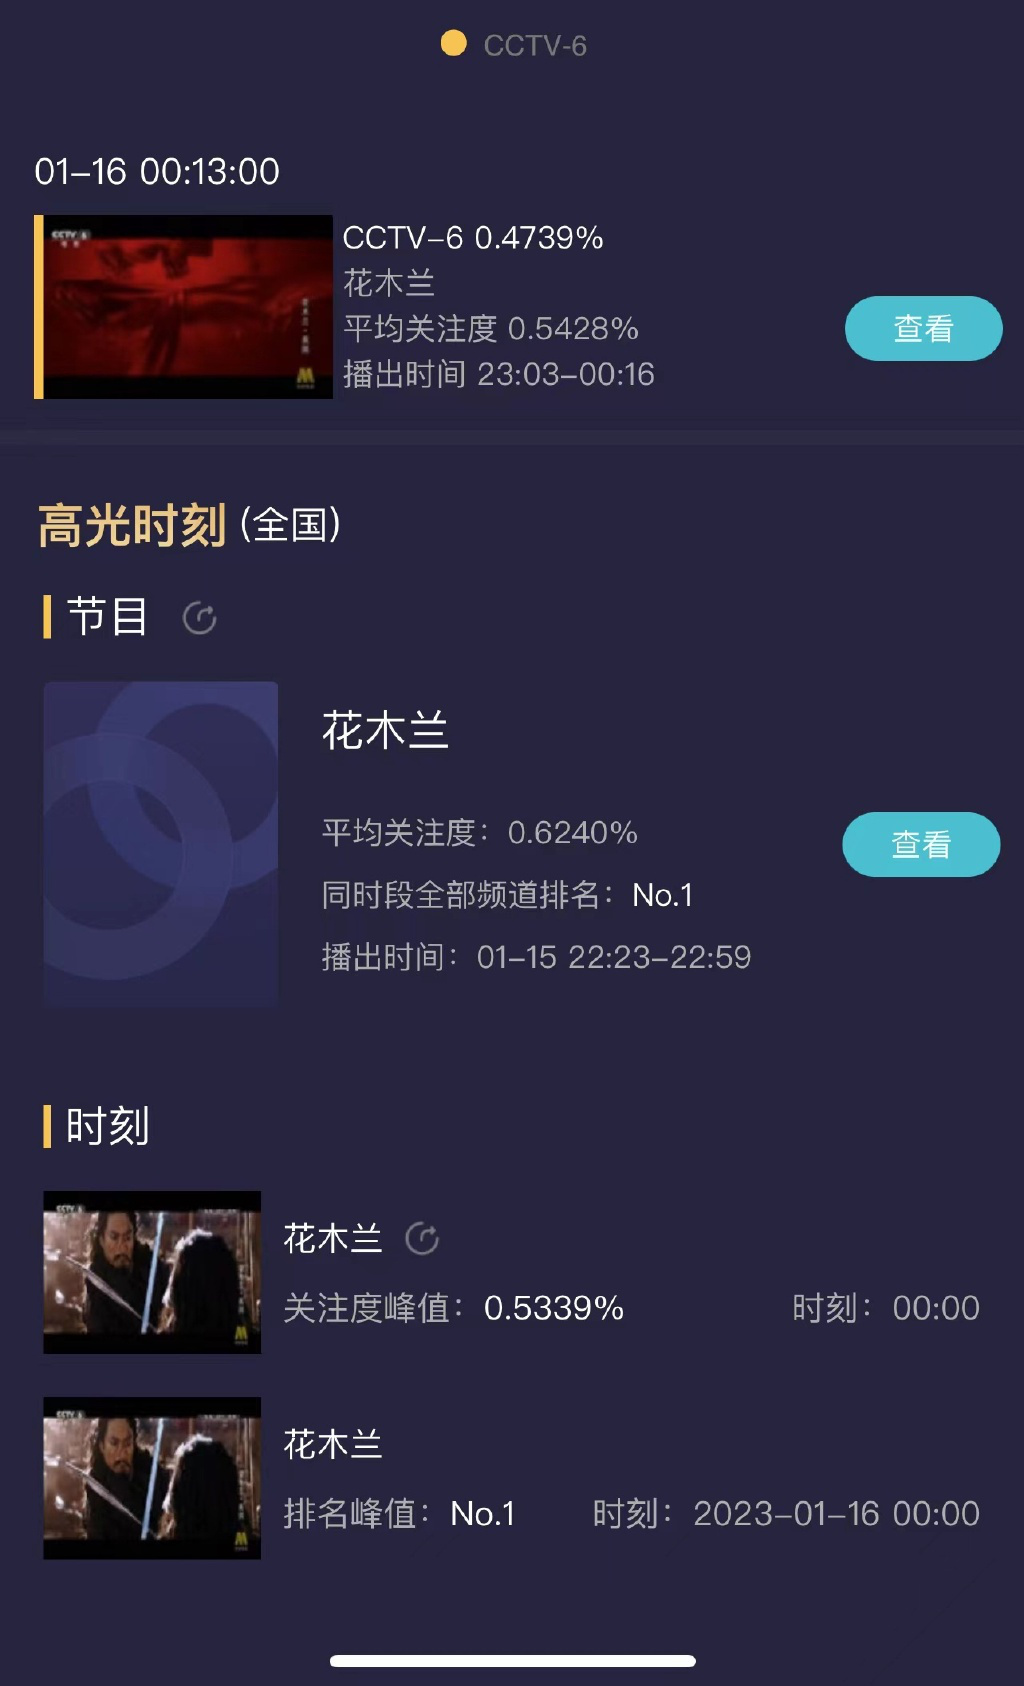 电影频道电视首播刘亦菲版《花木兰》收视率第一